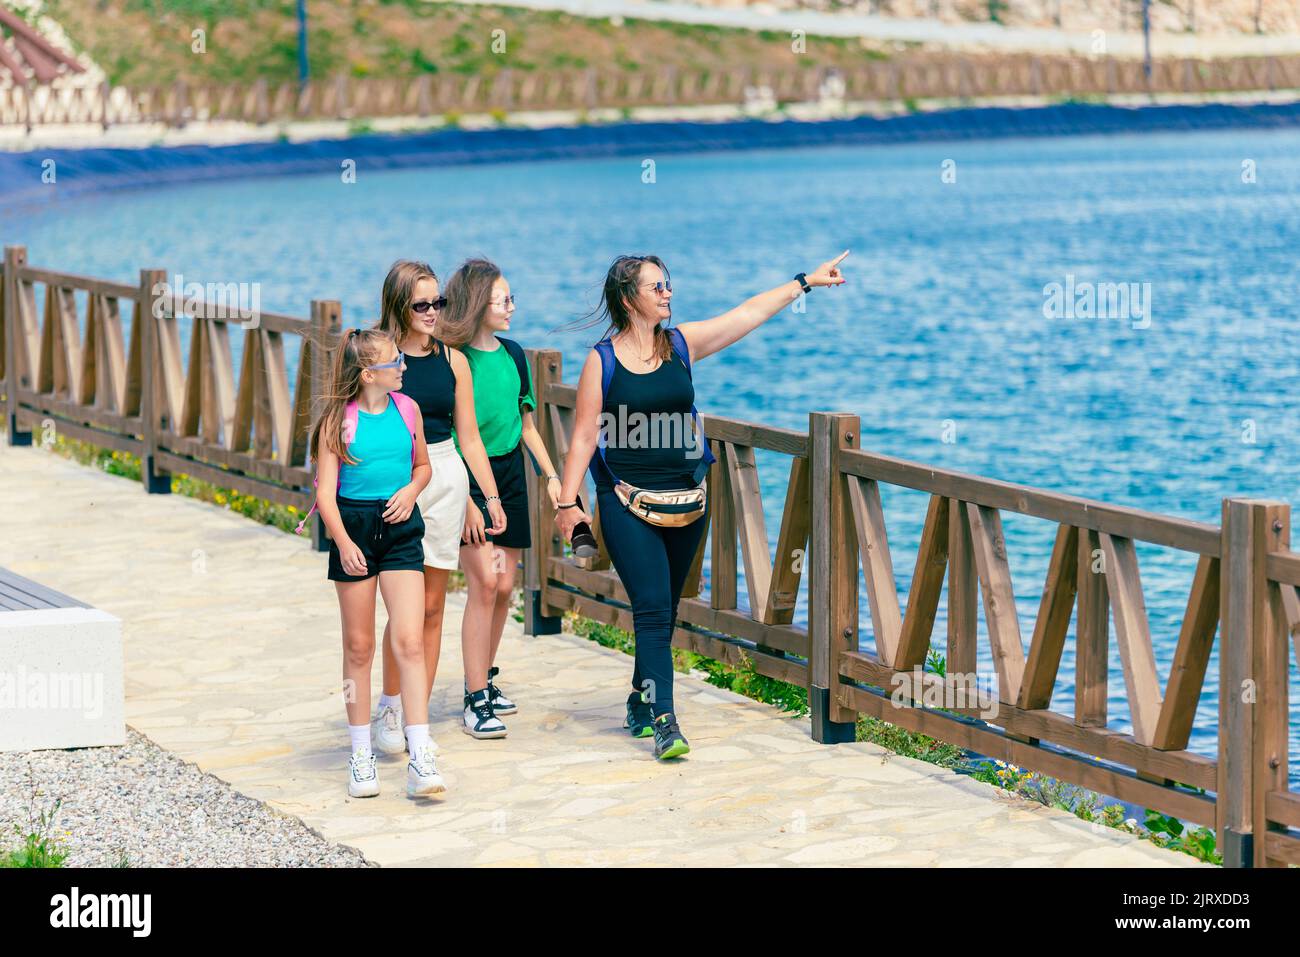 Le ragazze e una donna stanno camminando vicino al lago. La donna mostra alle ragazze un'attrazione turistica. Concetto di turismo di montagna e divertimento Foto Stock